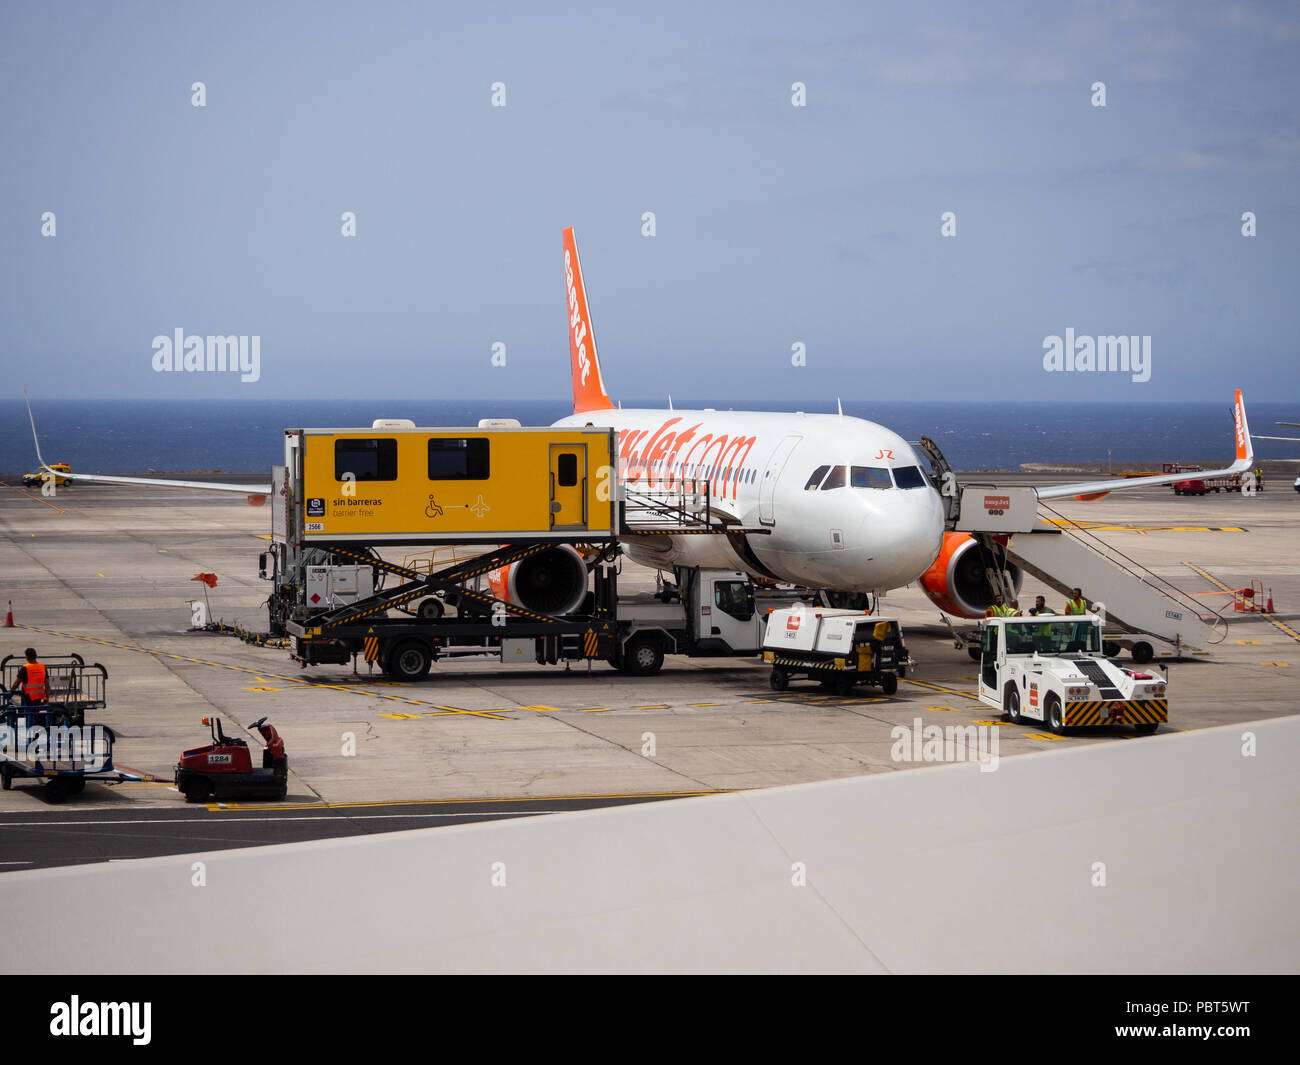 Playa de Las Americas, Tenerife, Espagne - 24 juillet 2018 : les personnes handicapées d'être transportée sur un avion Airbus Easyjet Banque D'Images